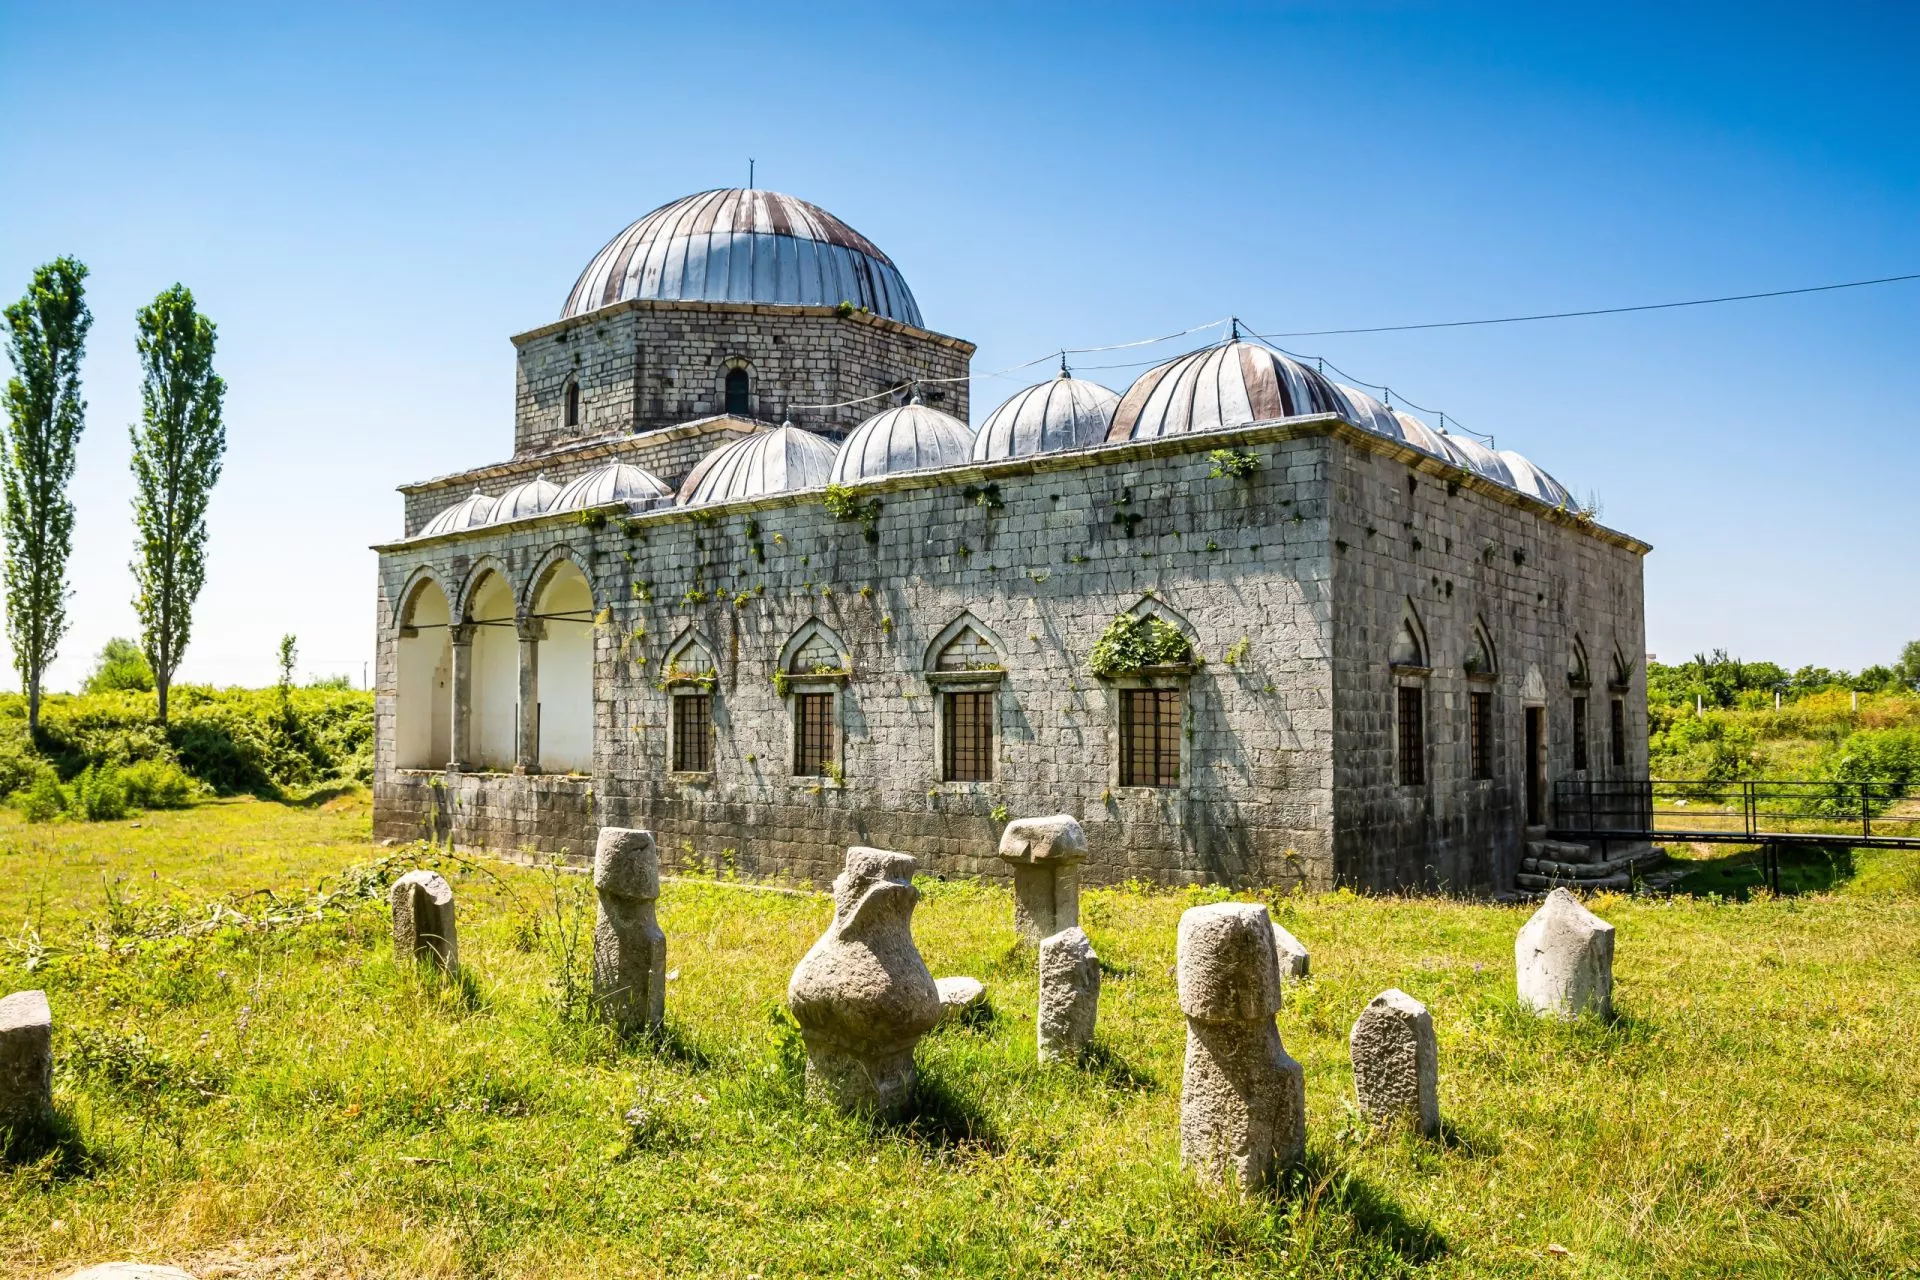 Lyijymoskeija, joka tunnetaan myös nimellä Busatli Mehmet Pashan moskeija, on historiallinen moskeija Shkoderissa.